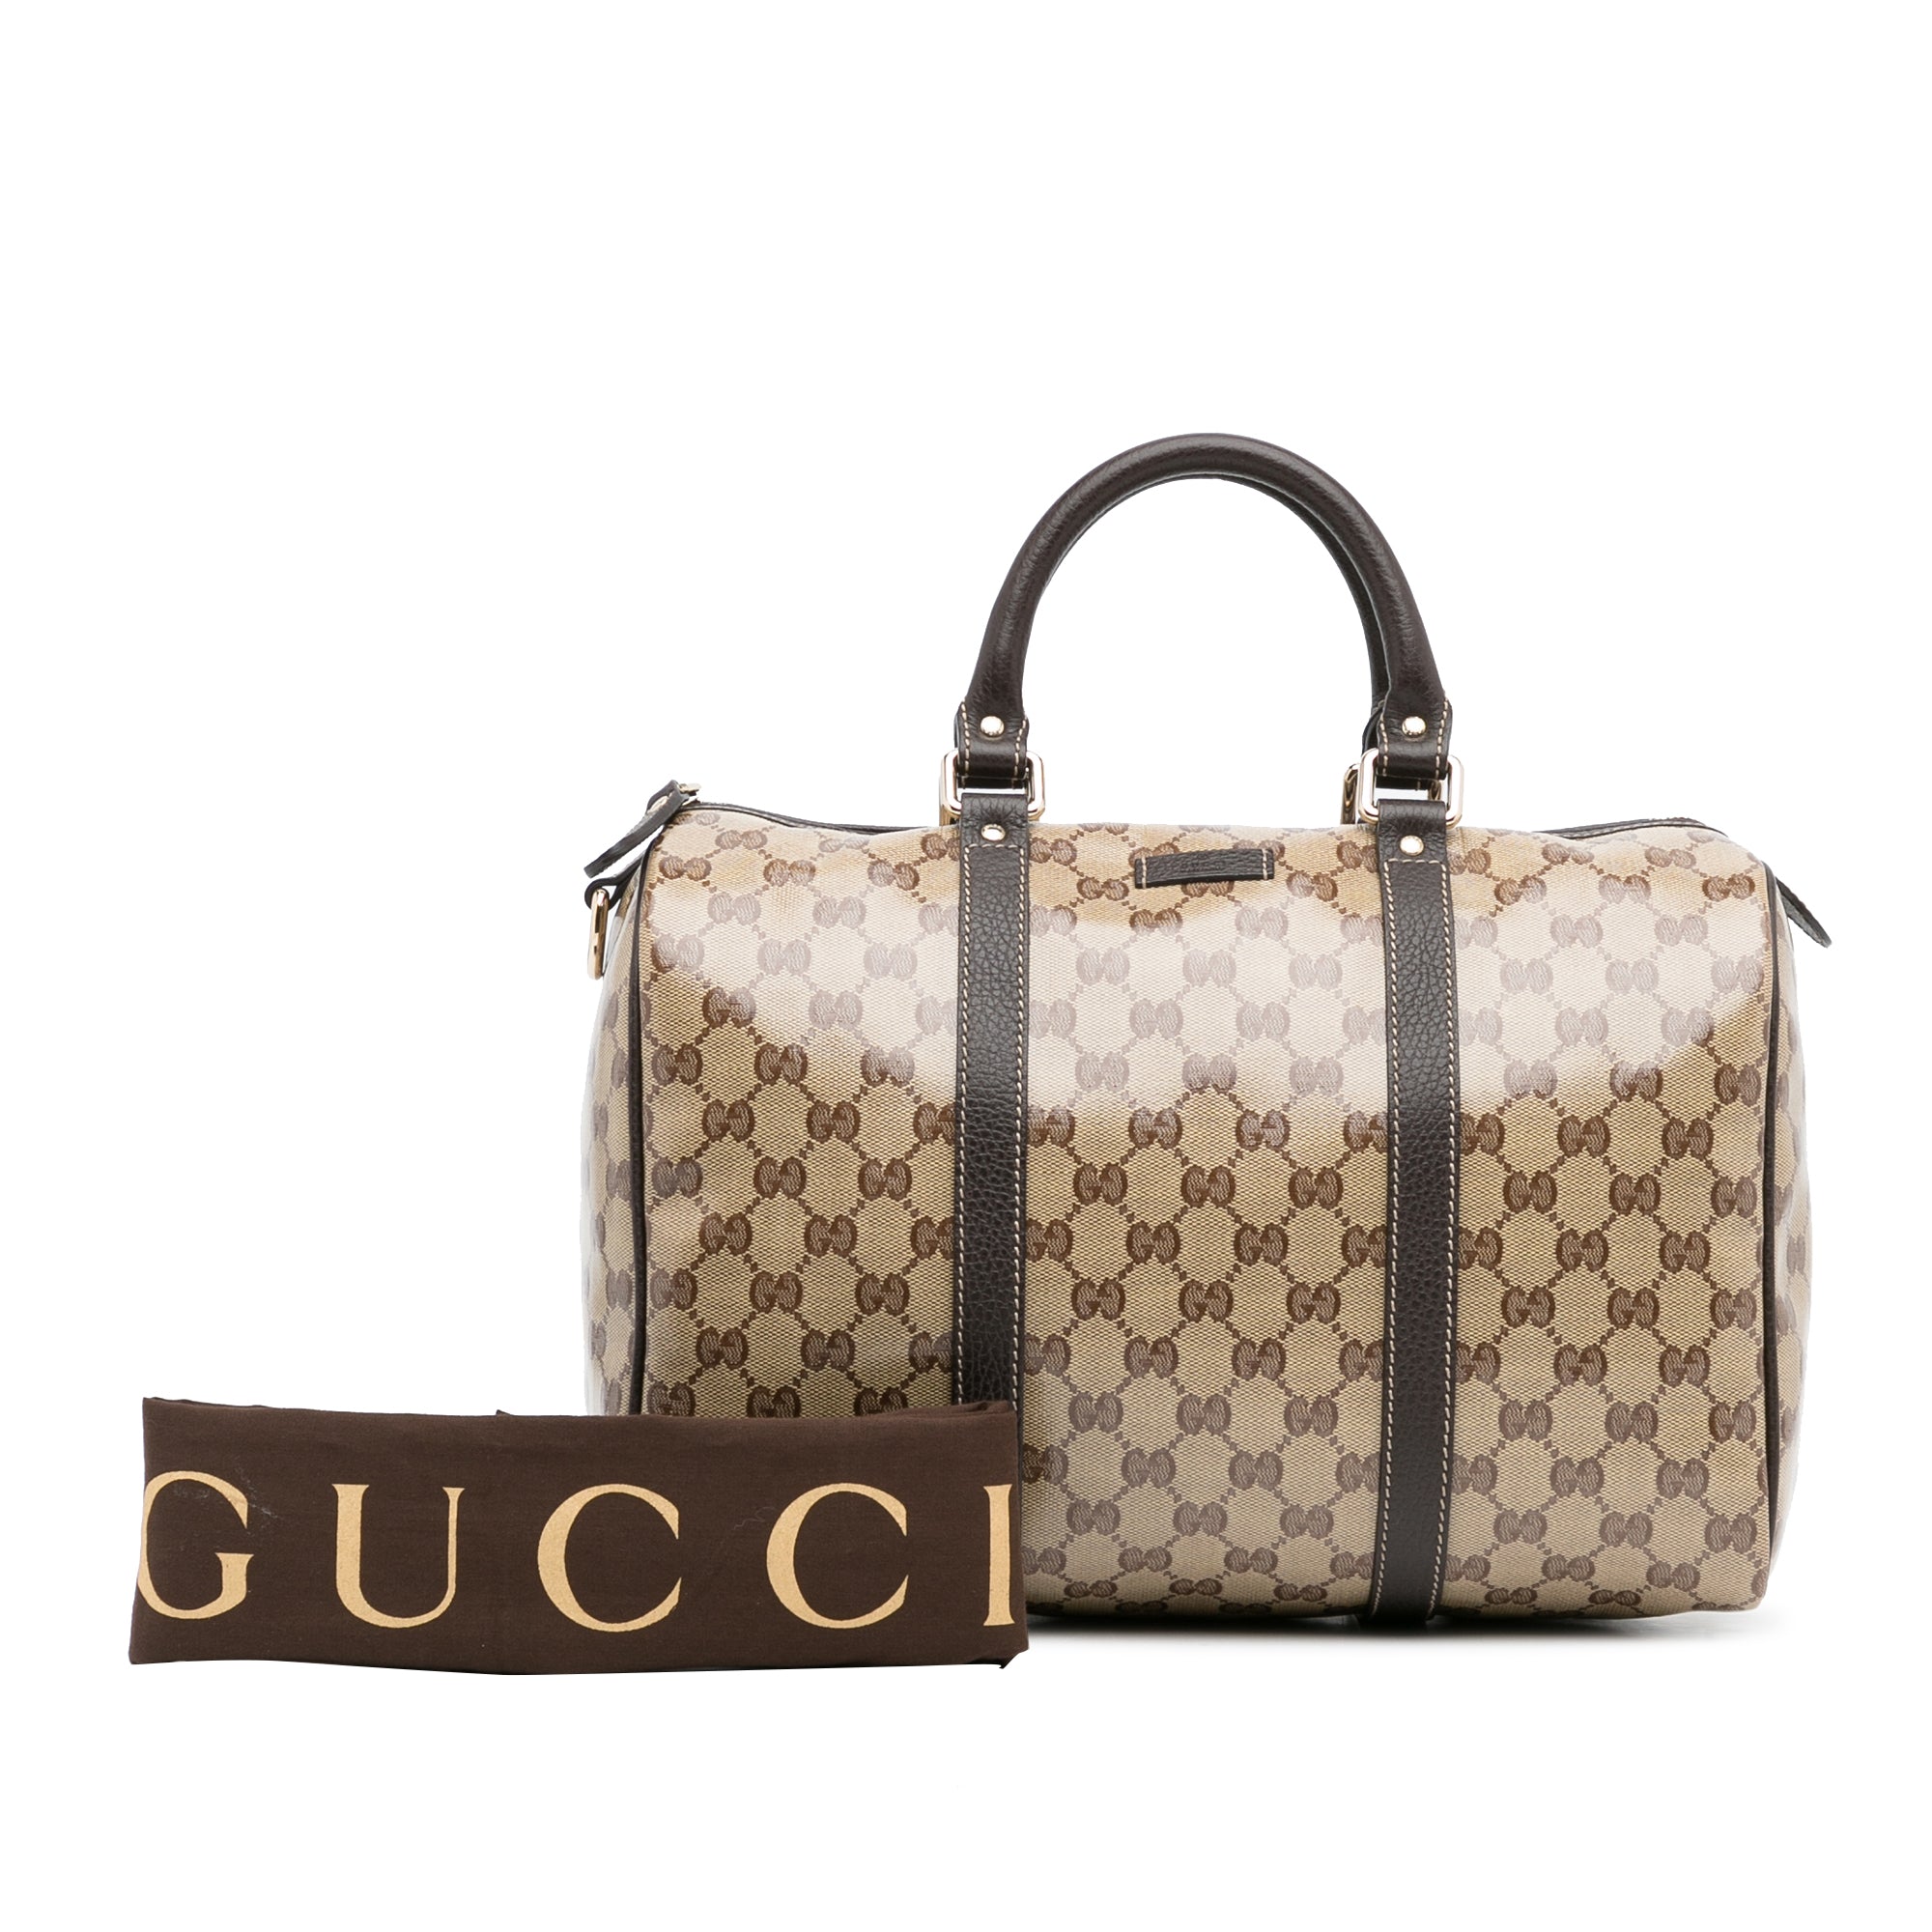 Gucci Boston GG Guccissima Crystal Leather Bag